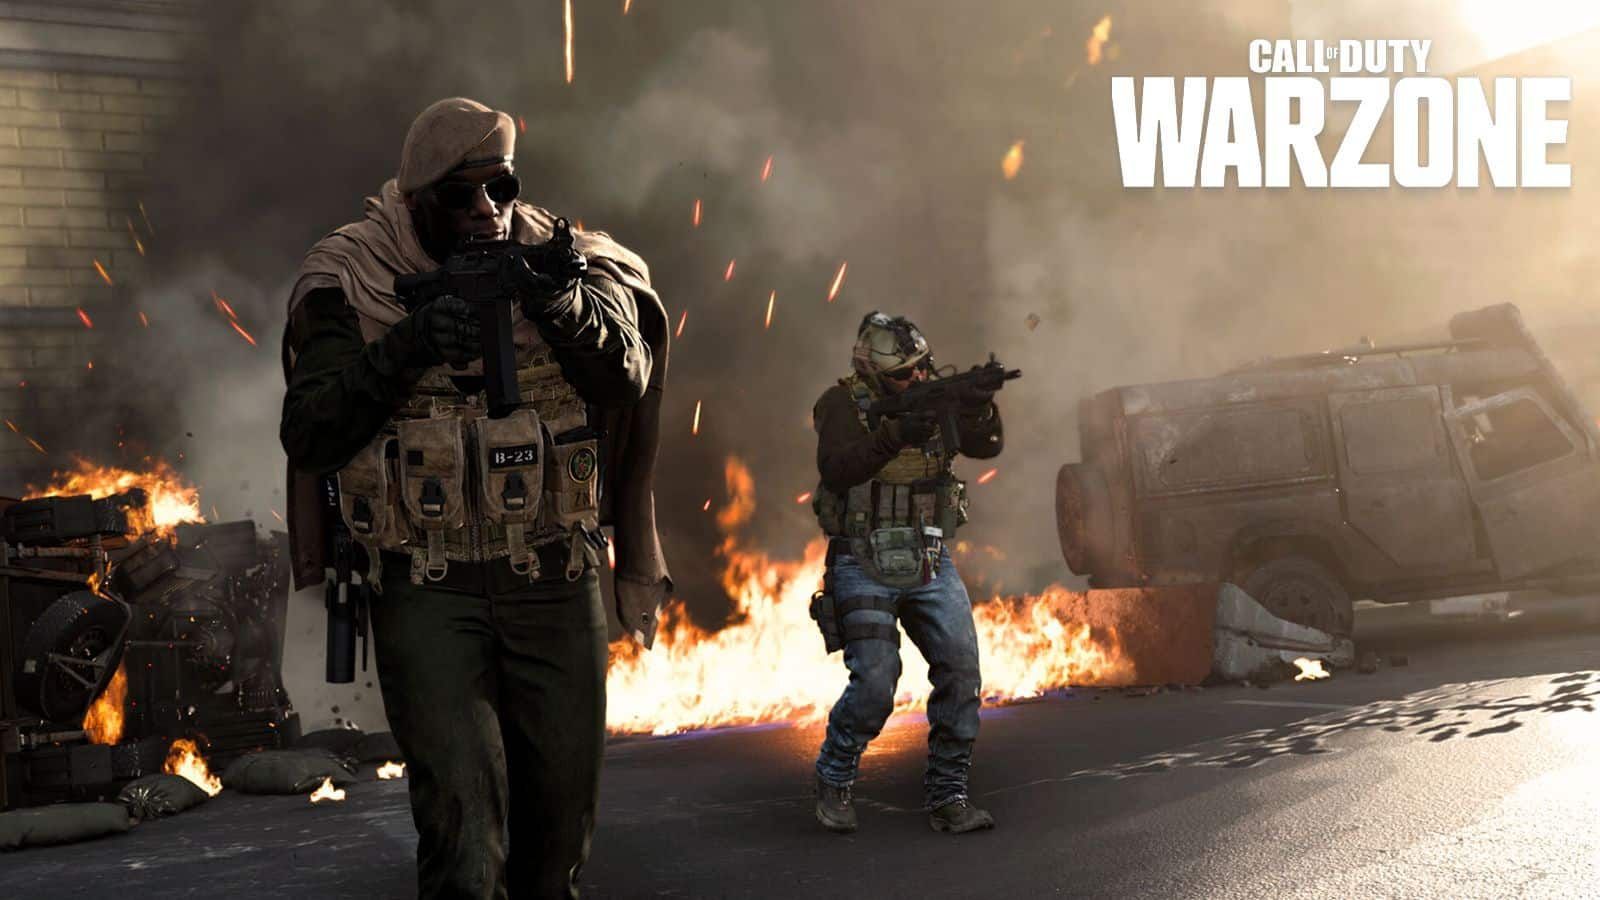 De nouveaux détails sur les armes de la saison 3 Warzone ont fuité - Dexerto.fr